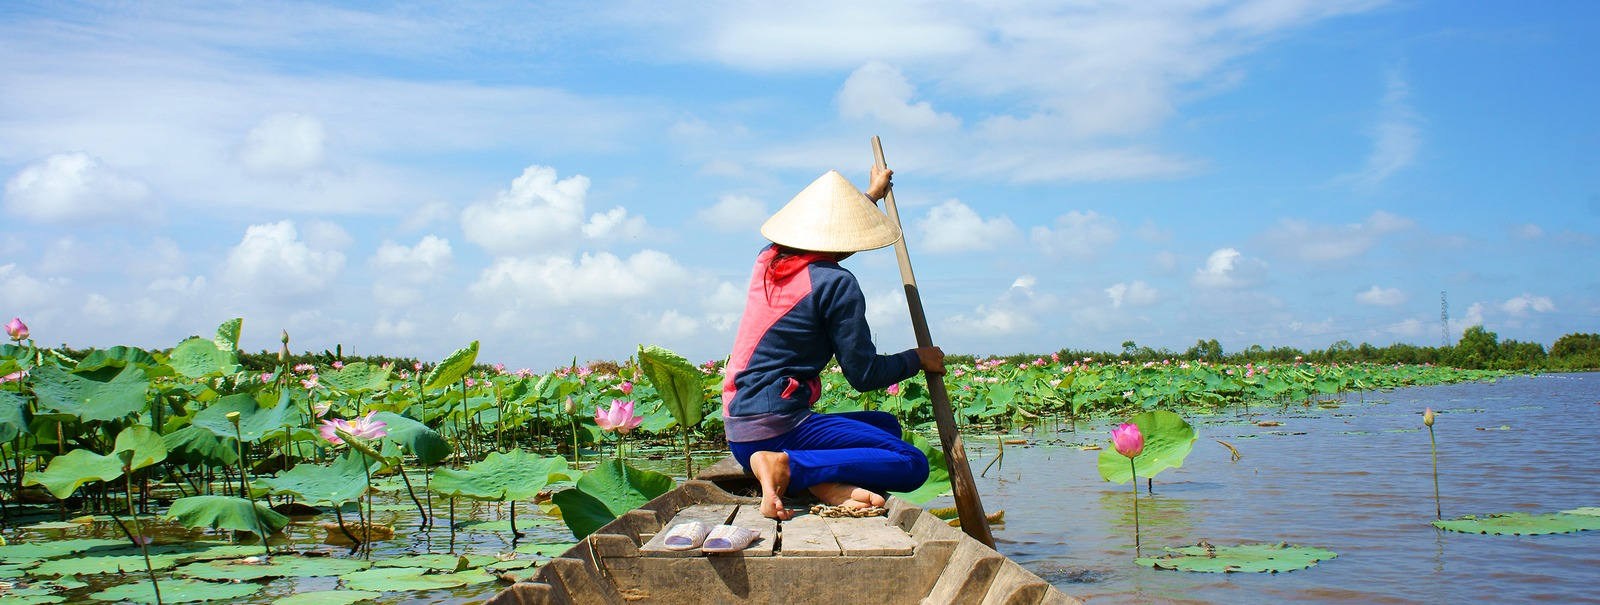 Authentisches Vietnam: beste Mekong Delta-Reise